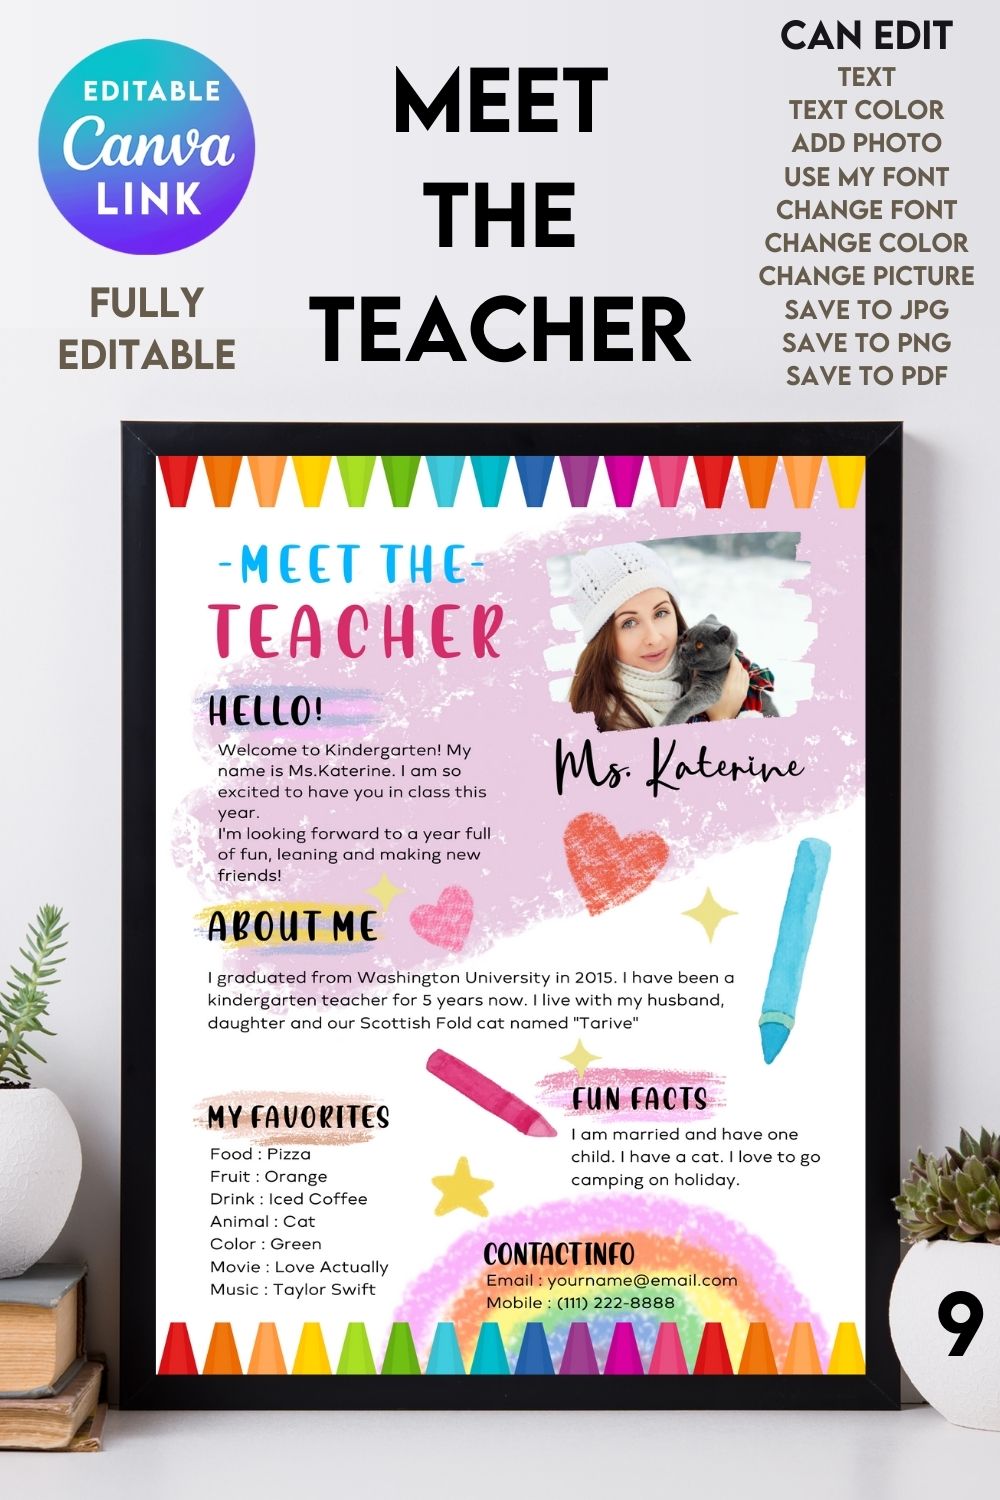 Meet The Teacher #9 – Canva Template pinterest preview image.